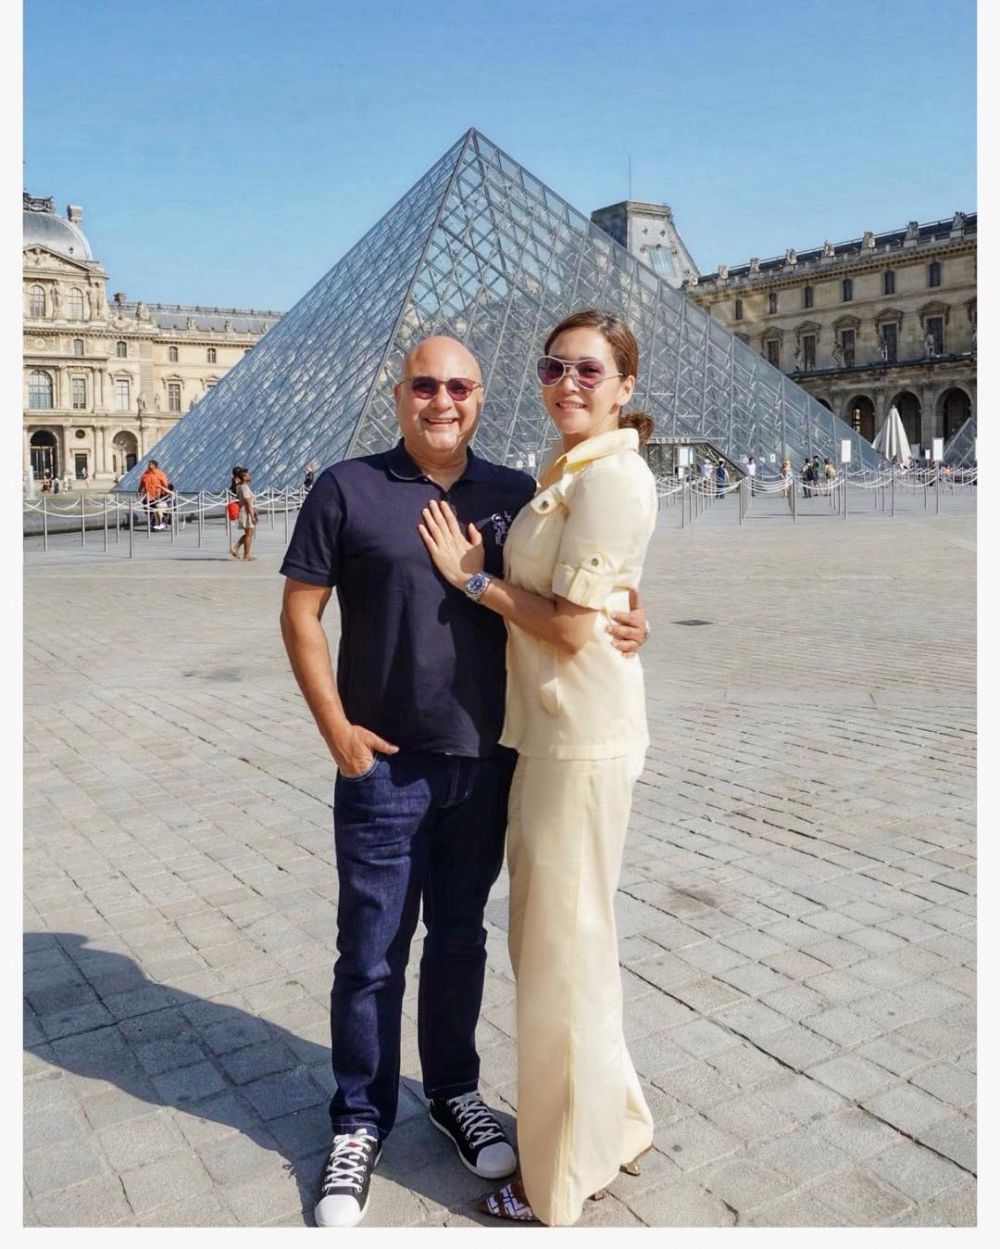 Unggah foto peluk suami di pesawat, pose Maia Estianty curi perhatian